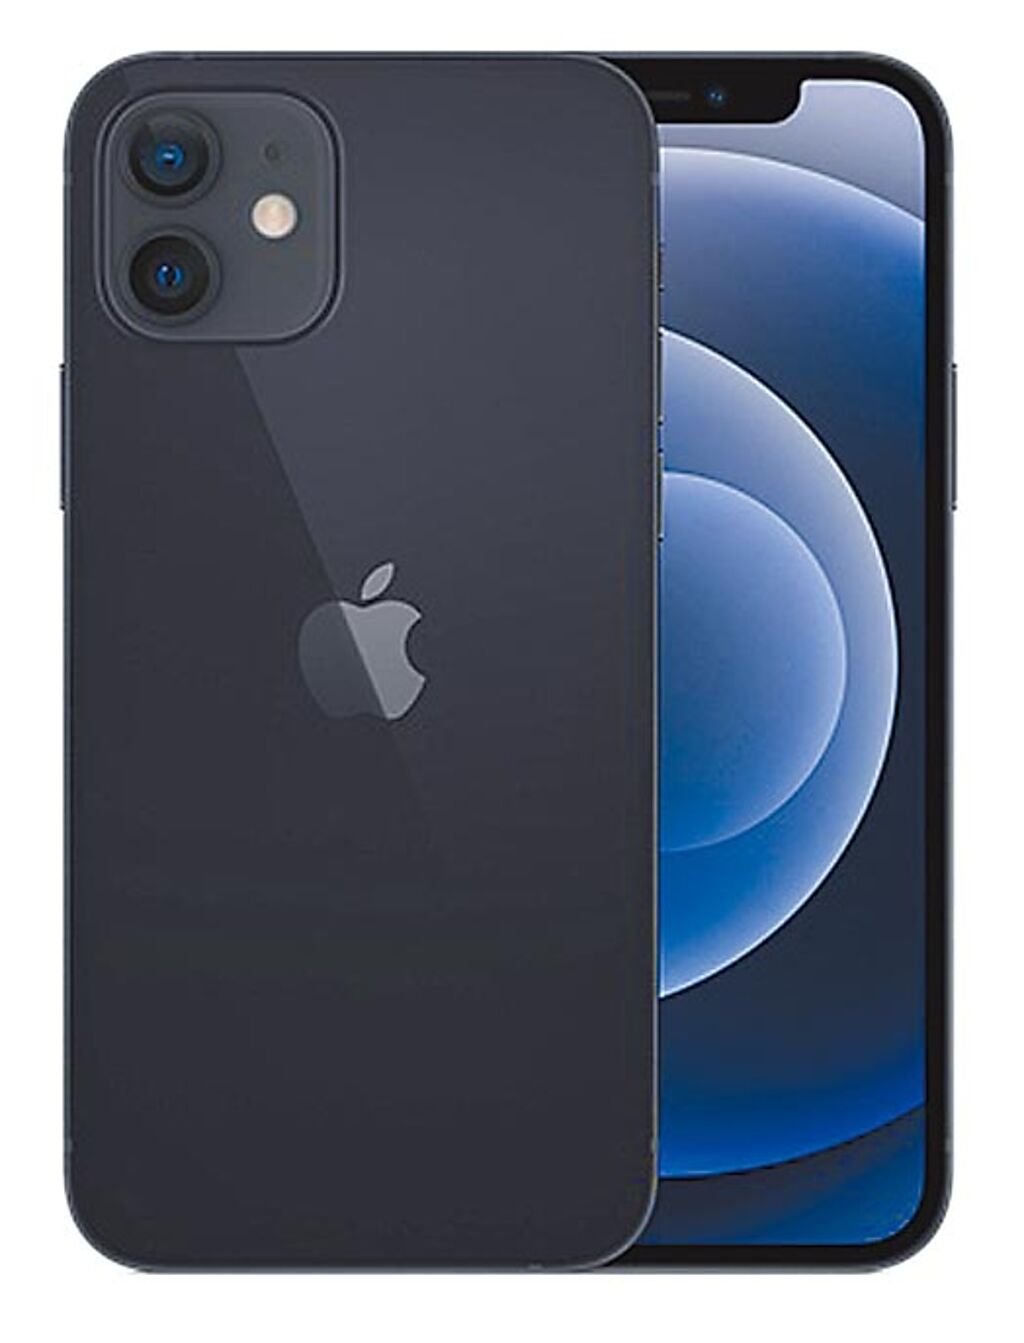 宏匯廣場「宏匯e-shop線上購」8月31日前下單可抽iPhone 12 64G黑色，1名，價值2萬6900元。（宏匯廣場提供）